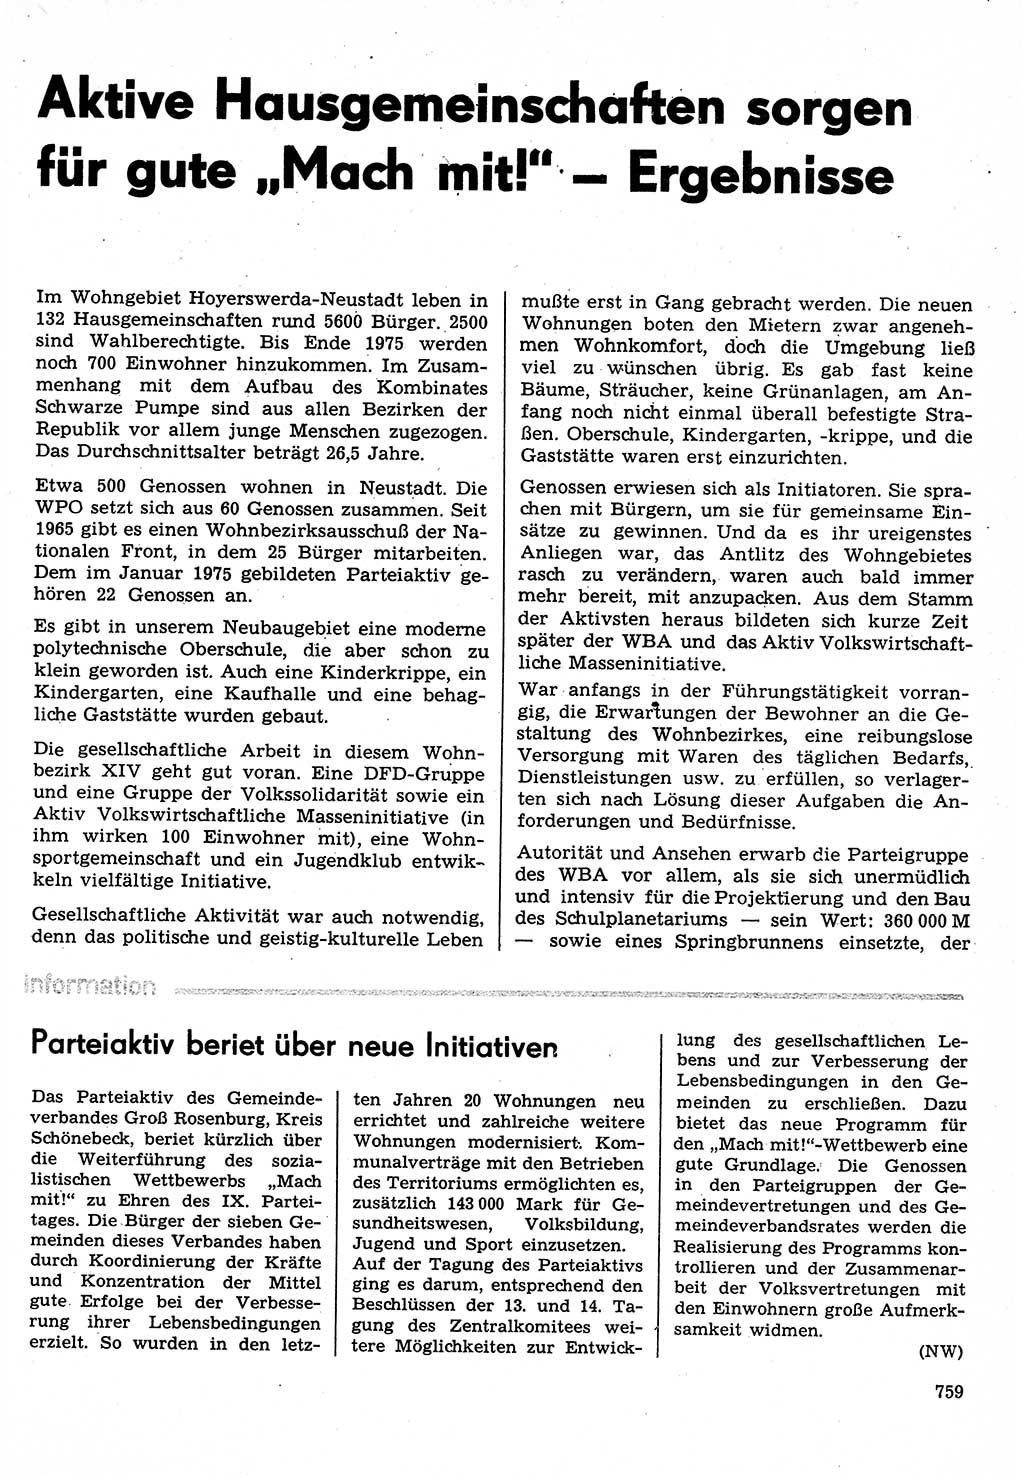 Neuer Weg (NW), Organ des Zentralkomitees (ZK) der SED (Sozialistische Einheitspartei Deutschlands) für Fragen des Parteilebens, 30. Jahrgang [Deutsche Demokratische Republik (DDR)] 1975, Seite 759 (NW ZK SED DDR 1975, S. 759)